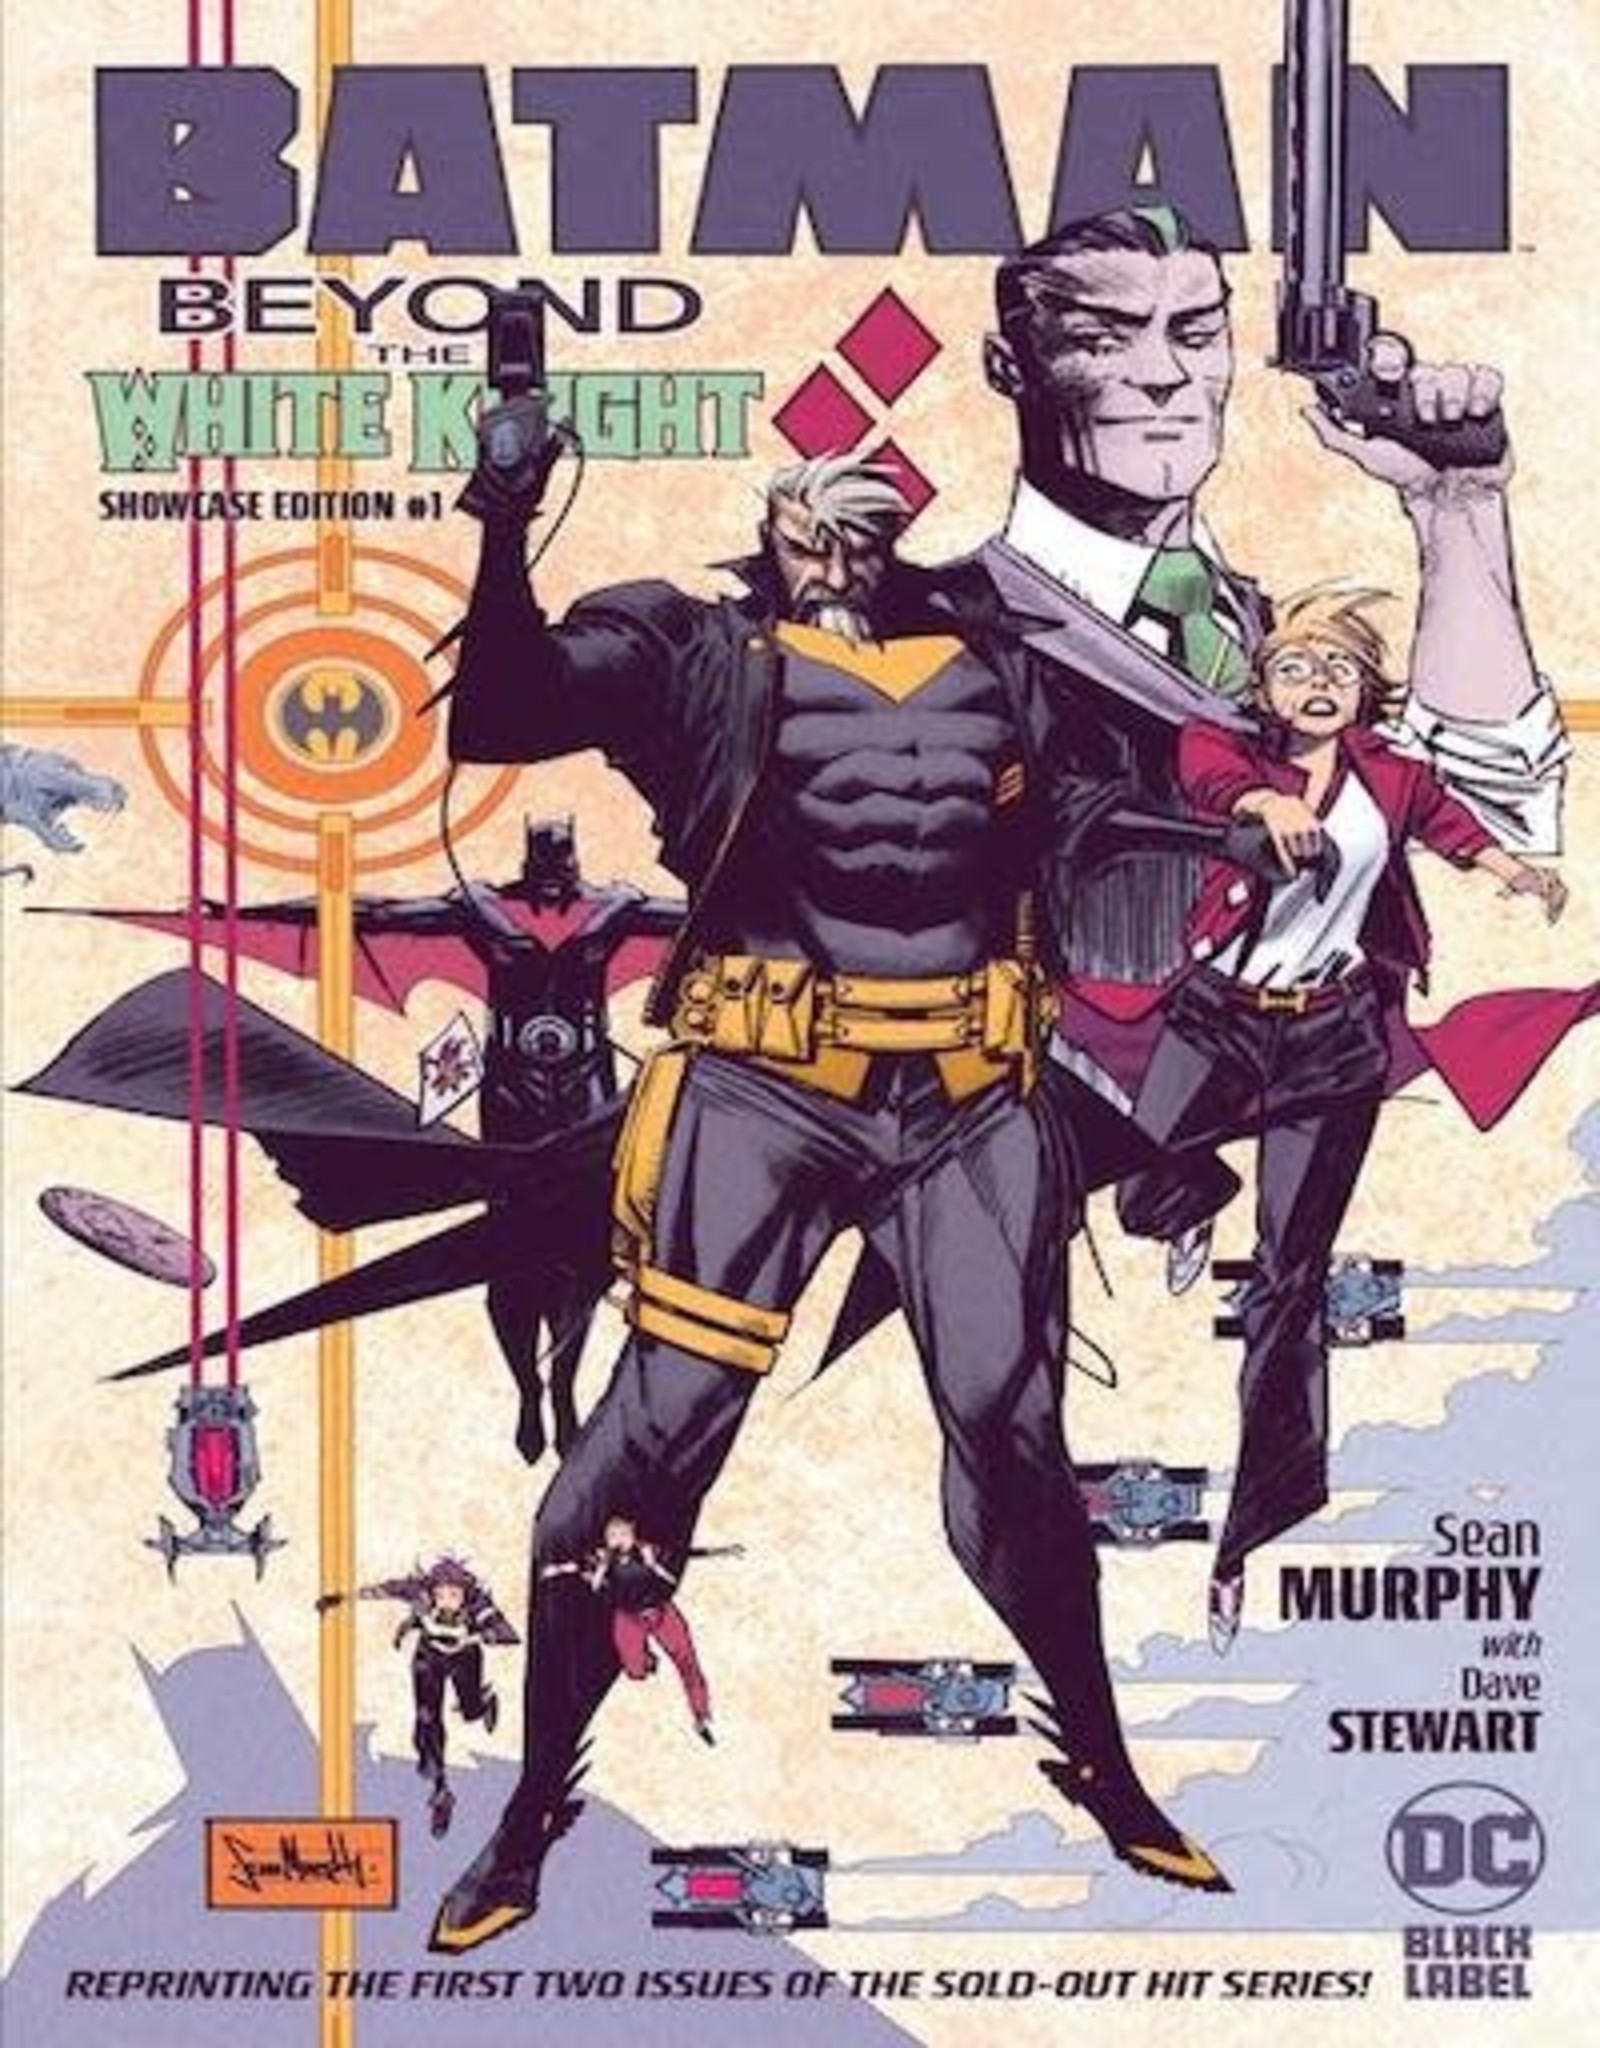 DC Comics Batman Beyond The White Knight Showcase Edition